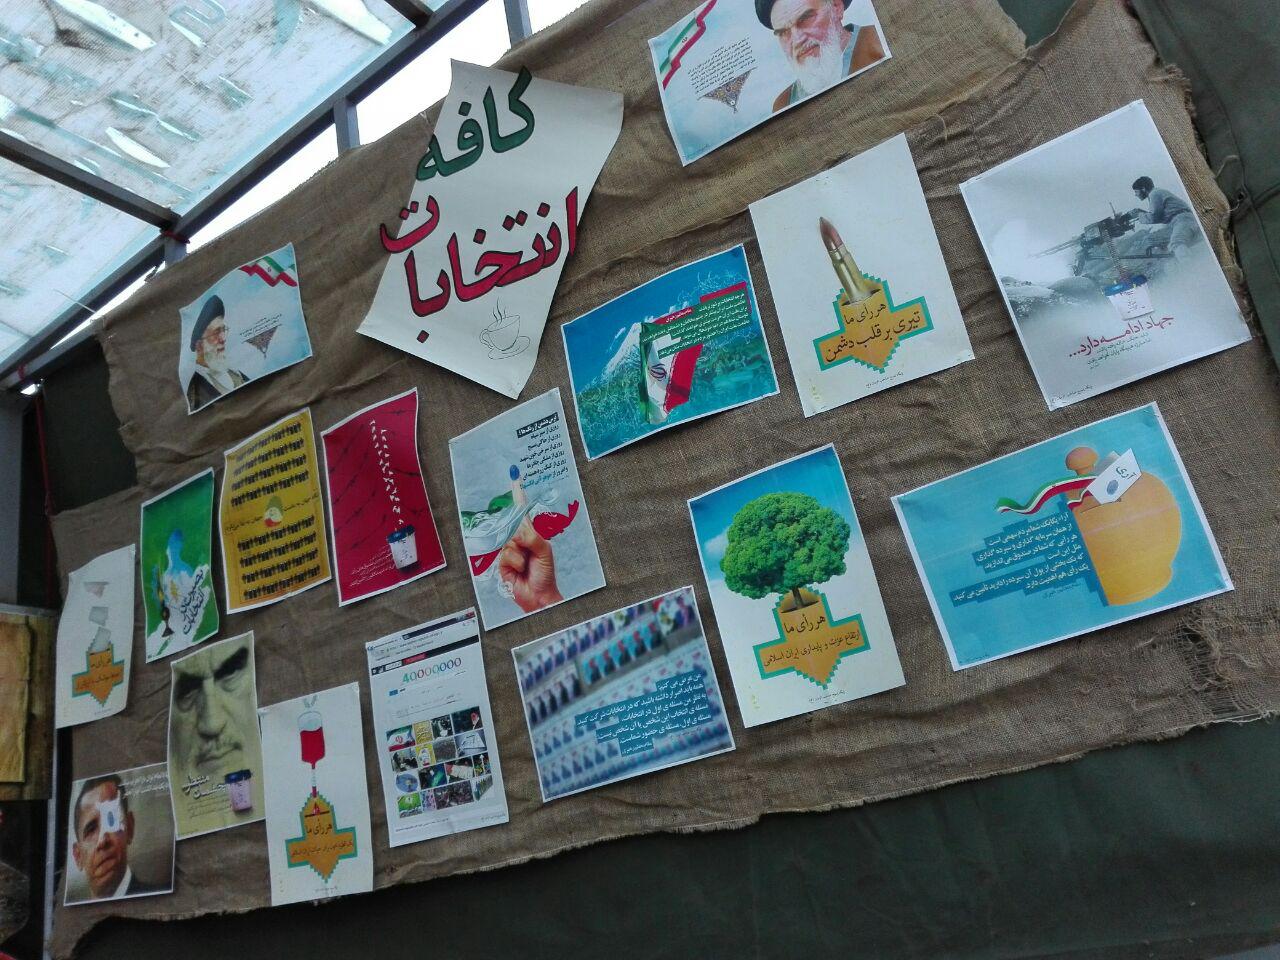 نمایشگاهی با عنوان کافه انتخابات در دانشگاه پیام نور مرکز اراک